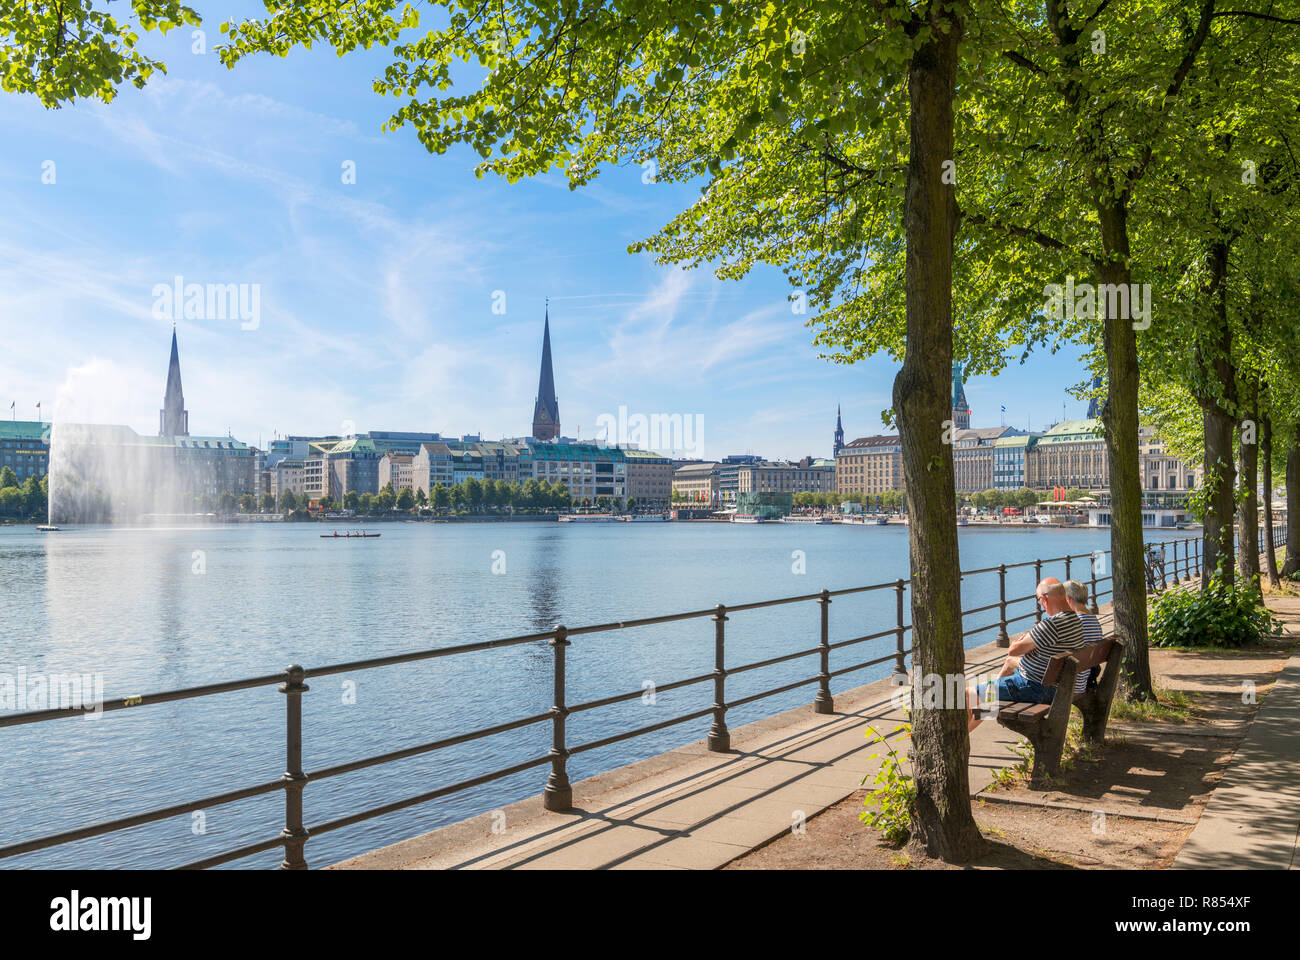 Pareja sentada en un banco a orillas del lago Binnenalster con el horizonte de la ciudad detrás, Hamburgo, Alemania. Foto de stock